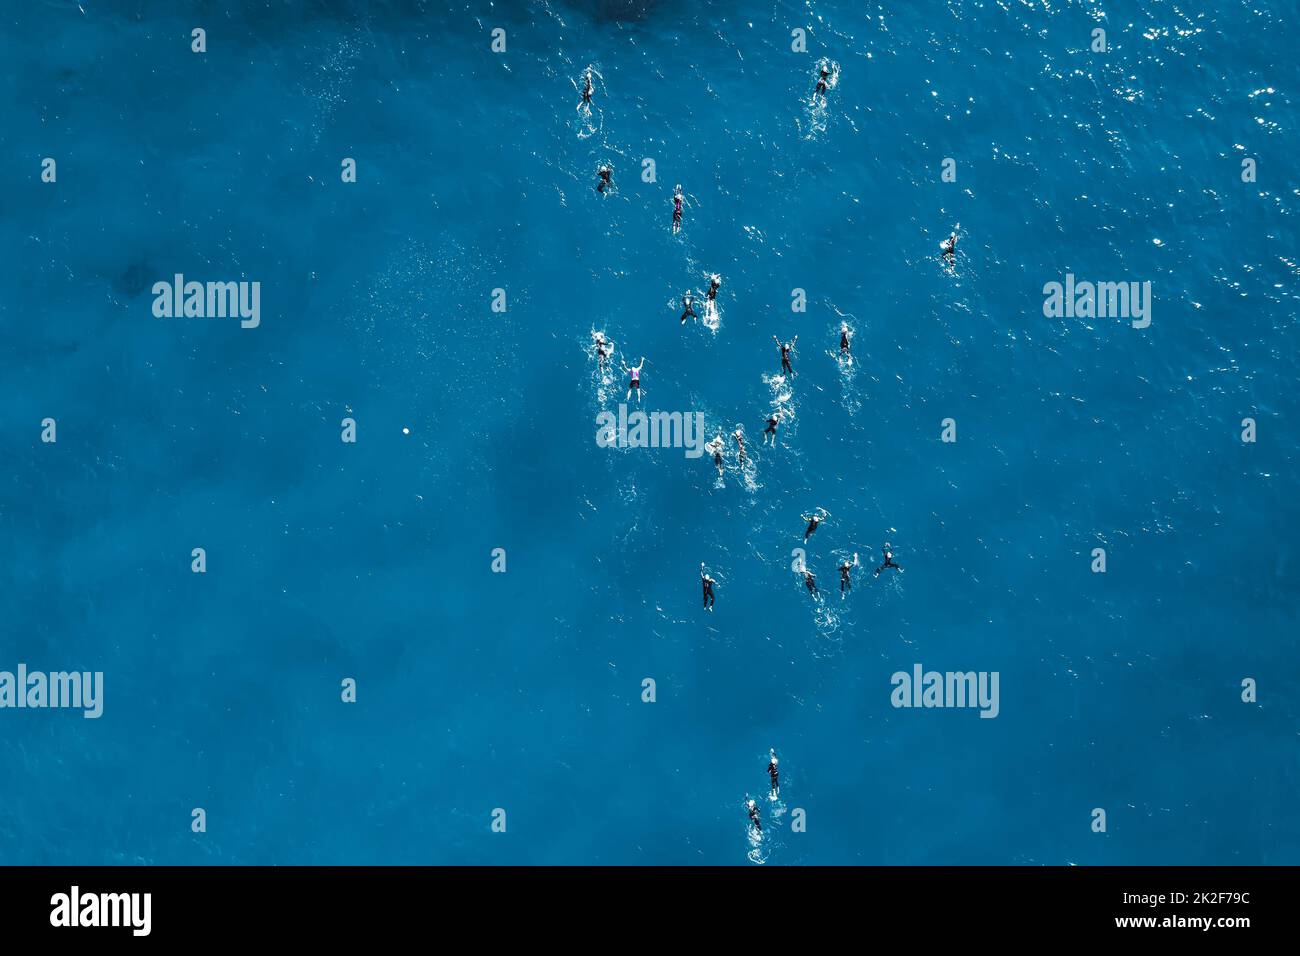 Vista descendente de los nadadores durante la competición en aguas abiertas Foto de stock